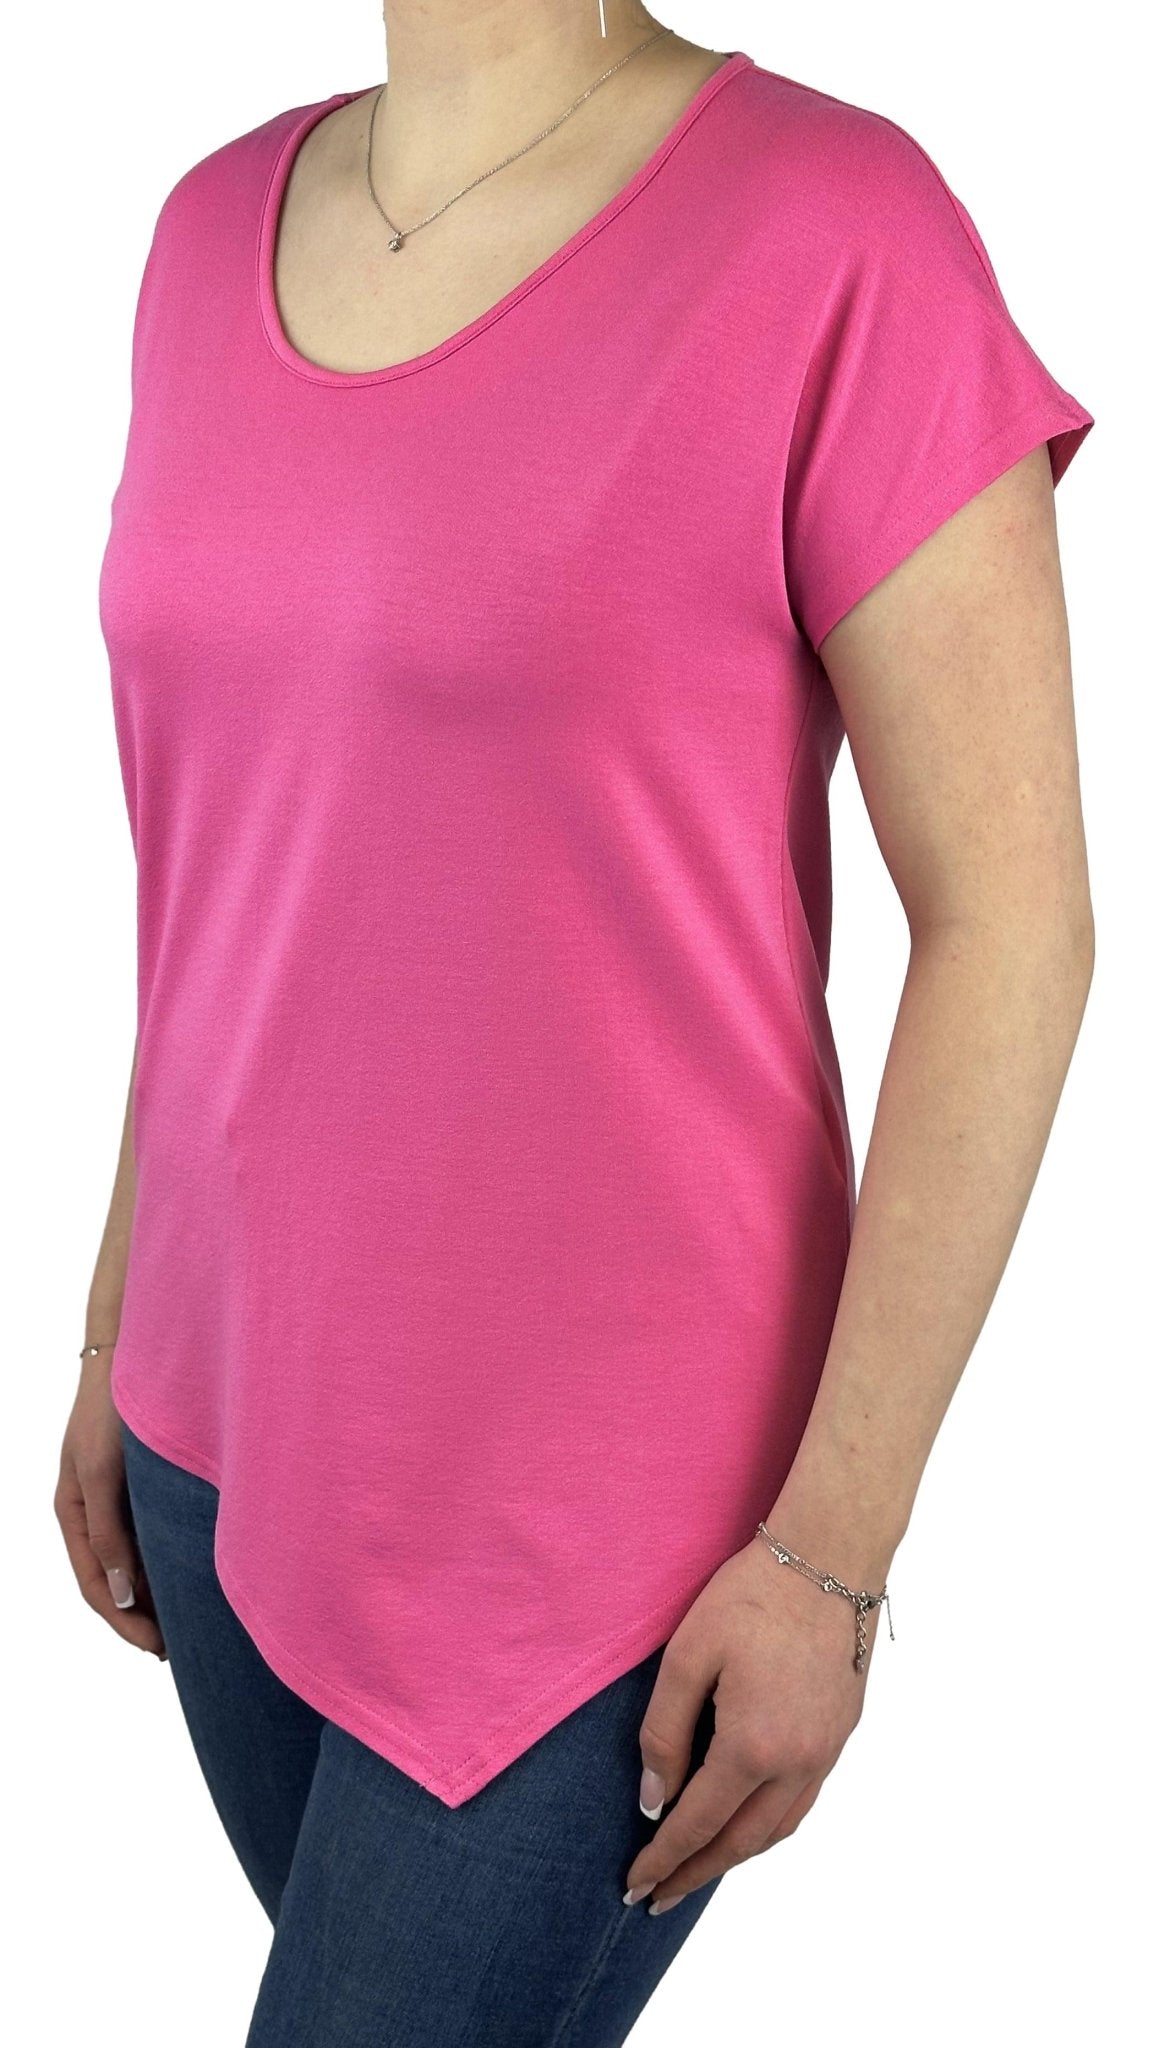 Doris Streich Shirt 501 270. Mode von Doris Streich